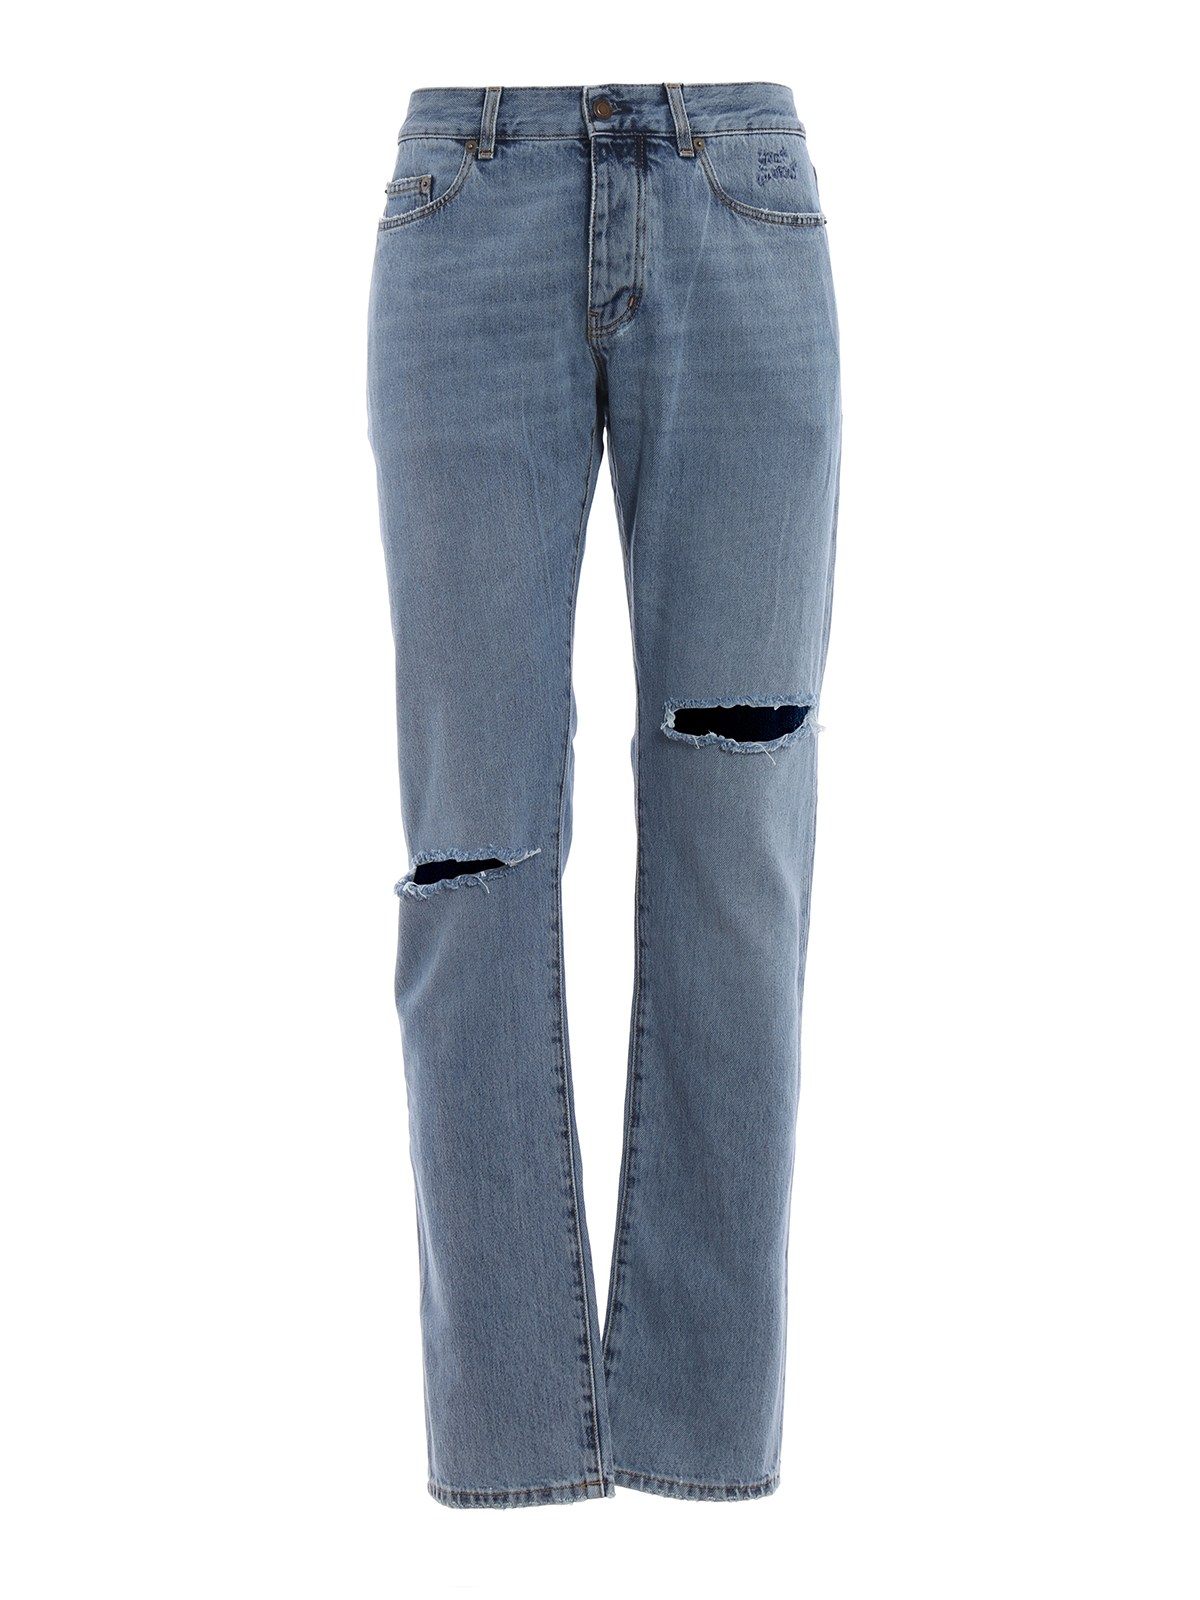 Straight leg jeans Saint Laurent - Vintage look cotton denim jeans ...